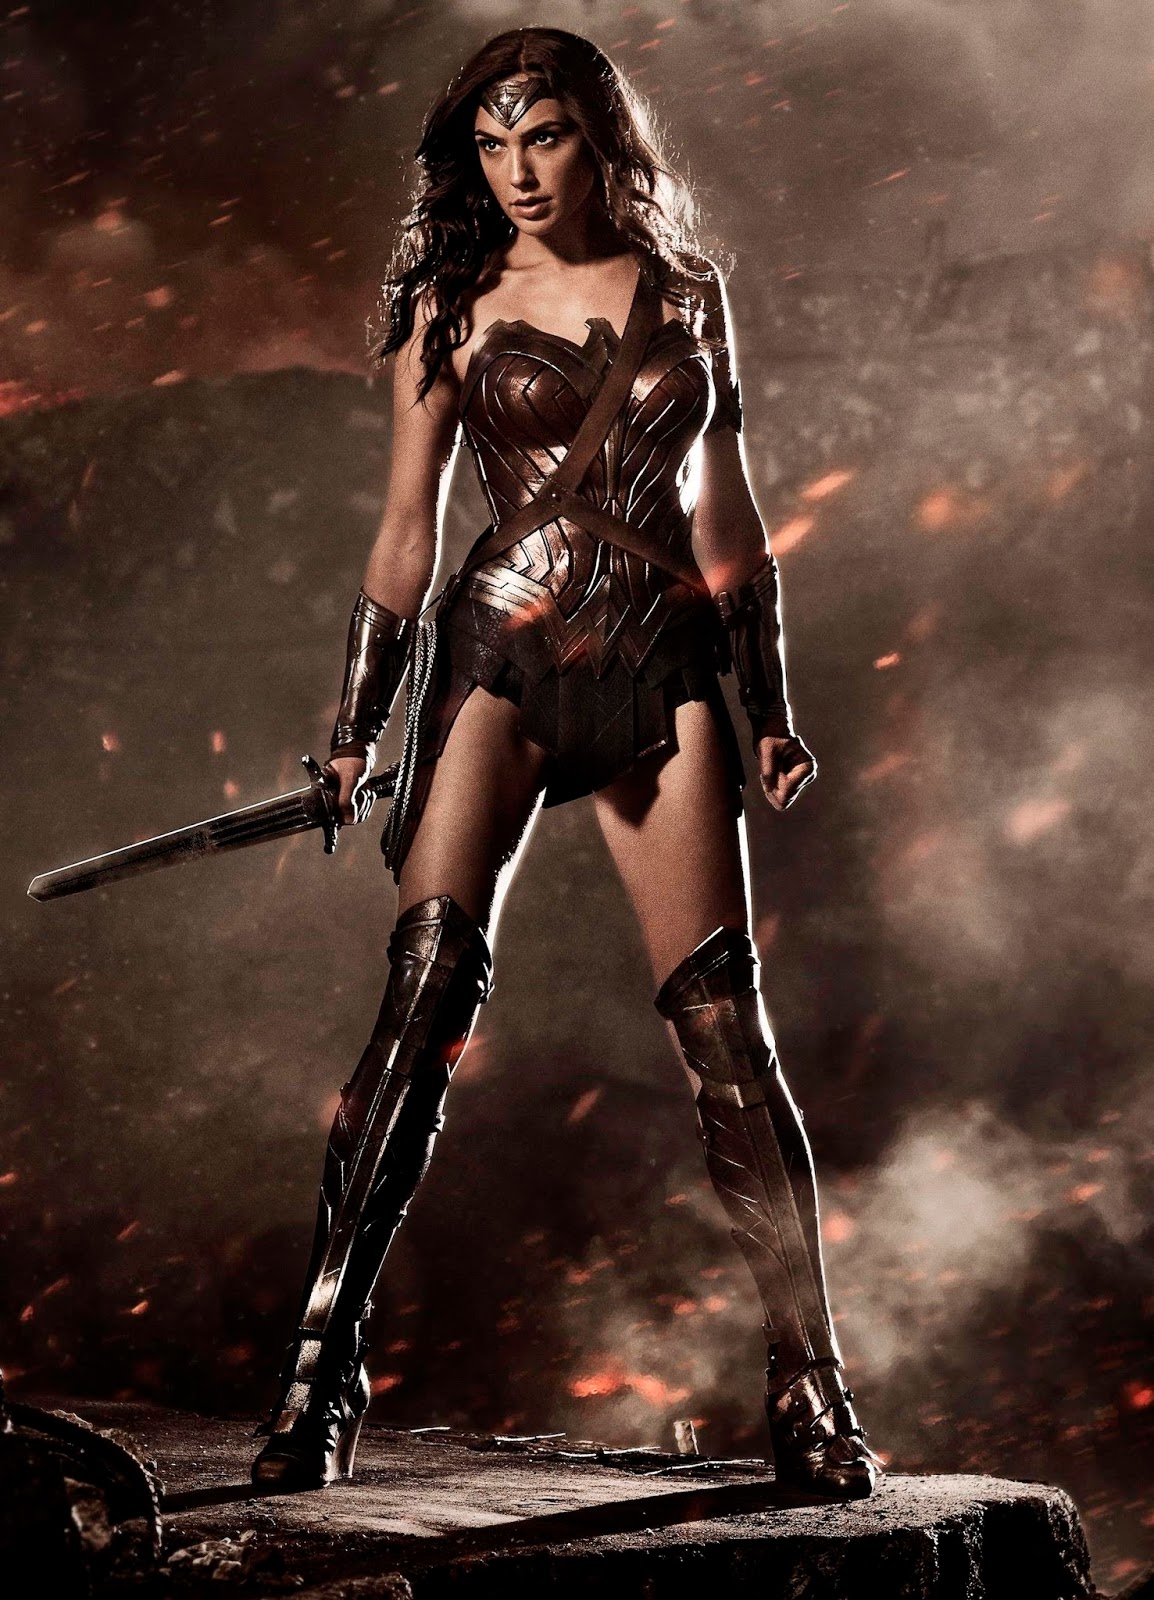 Đánh giá phim: Wonder Woman - Chiến binh Amazons xinh đẹp